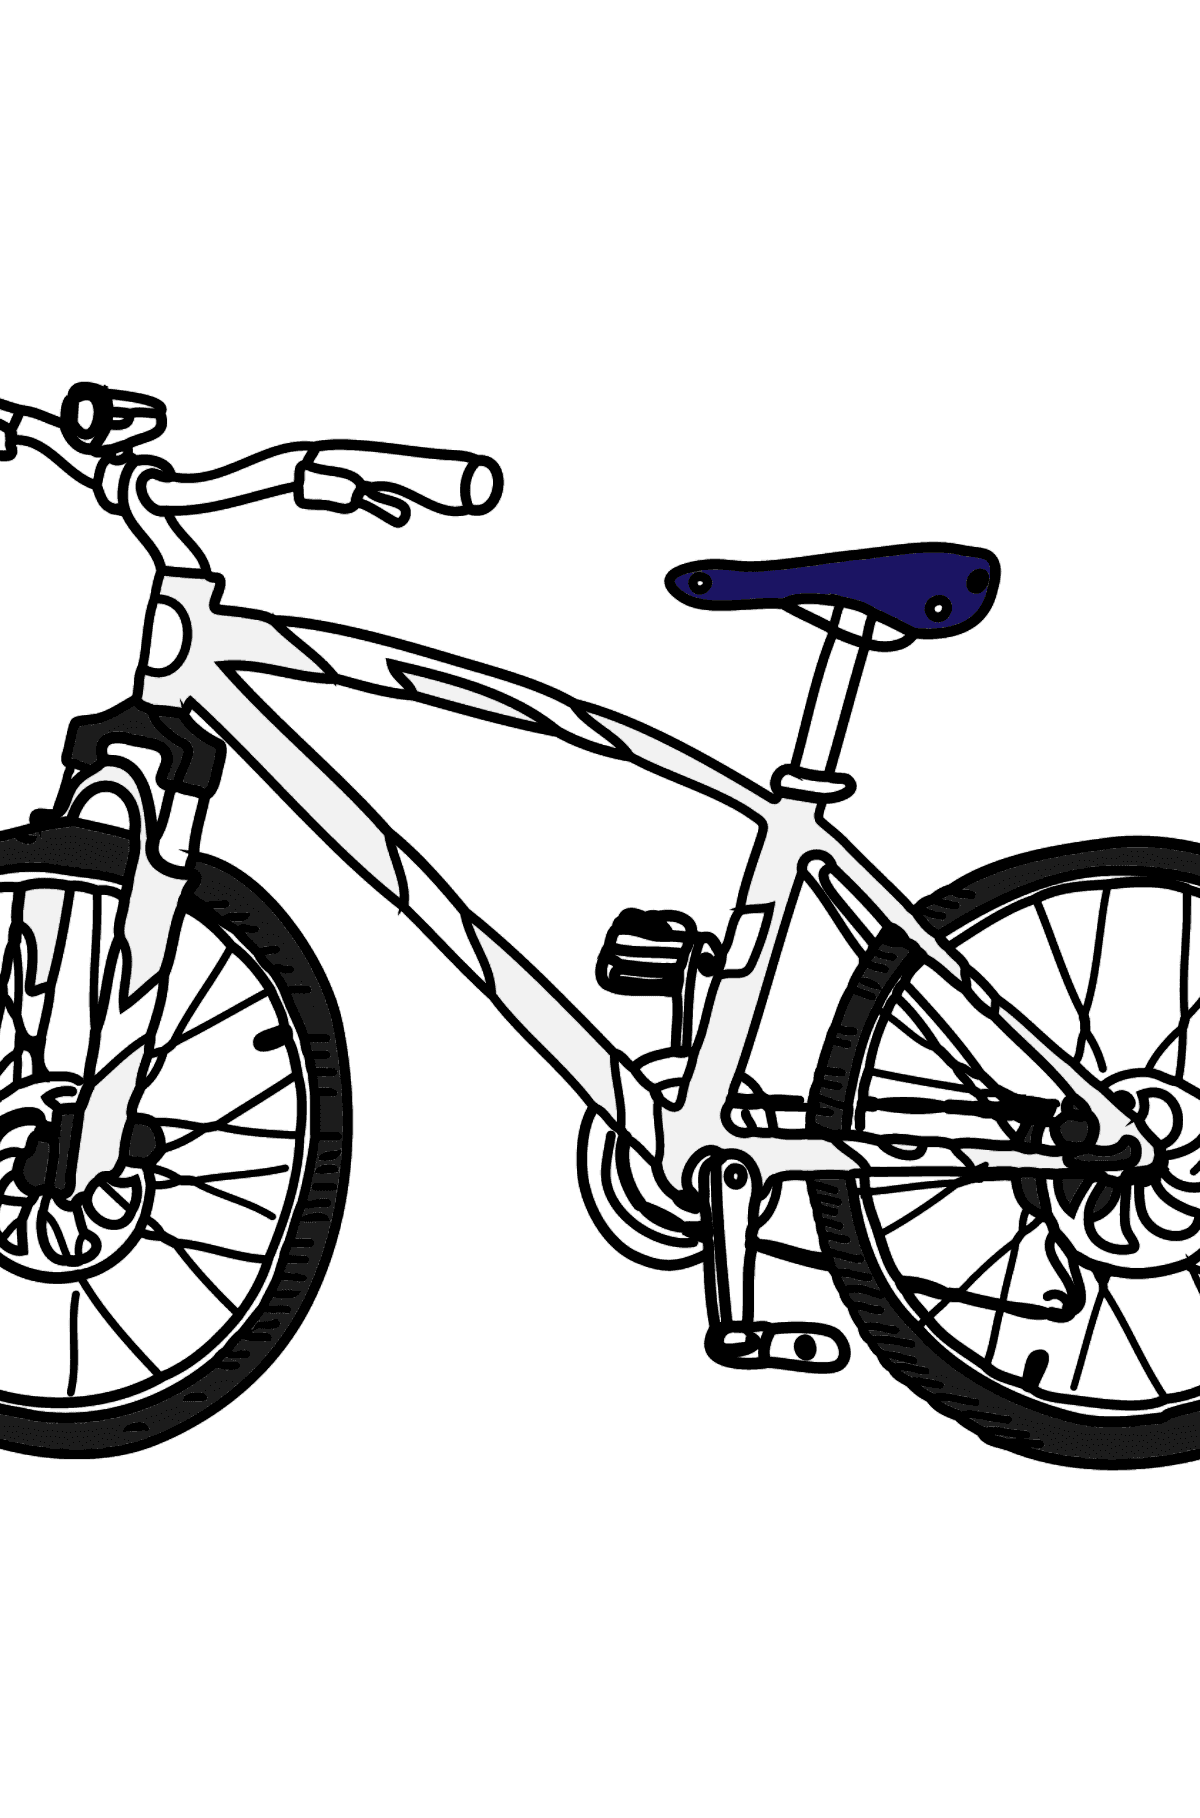 Tegning til fargelegging en sykkel - Tegninger til fargelegging for barn